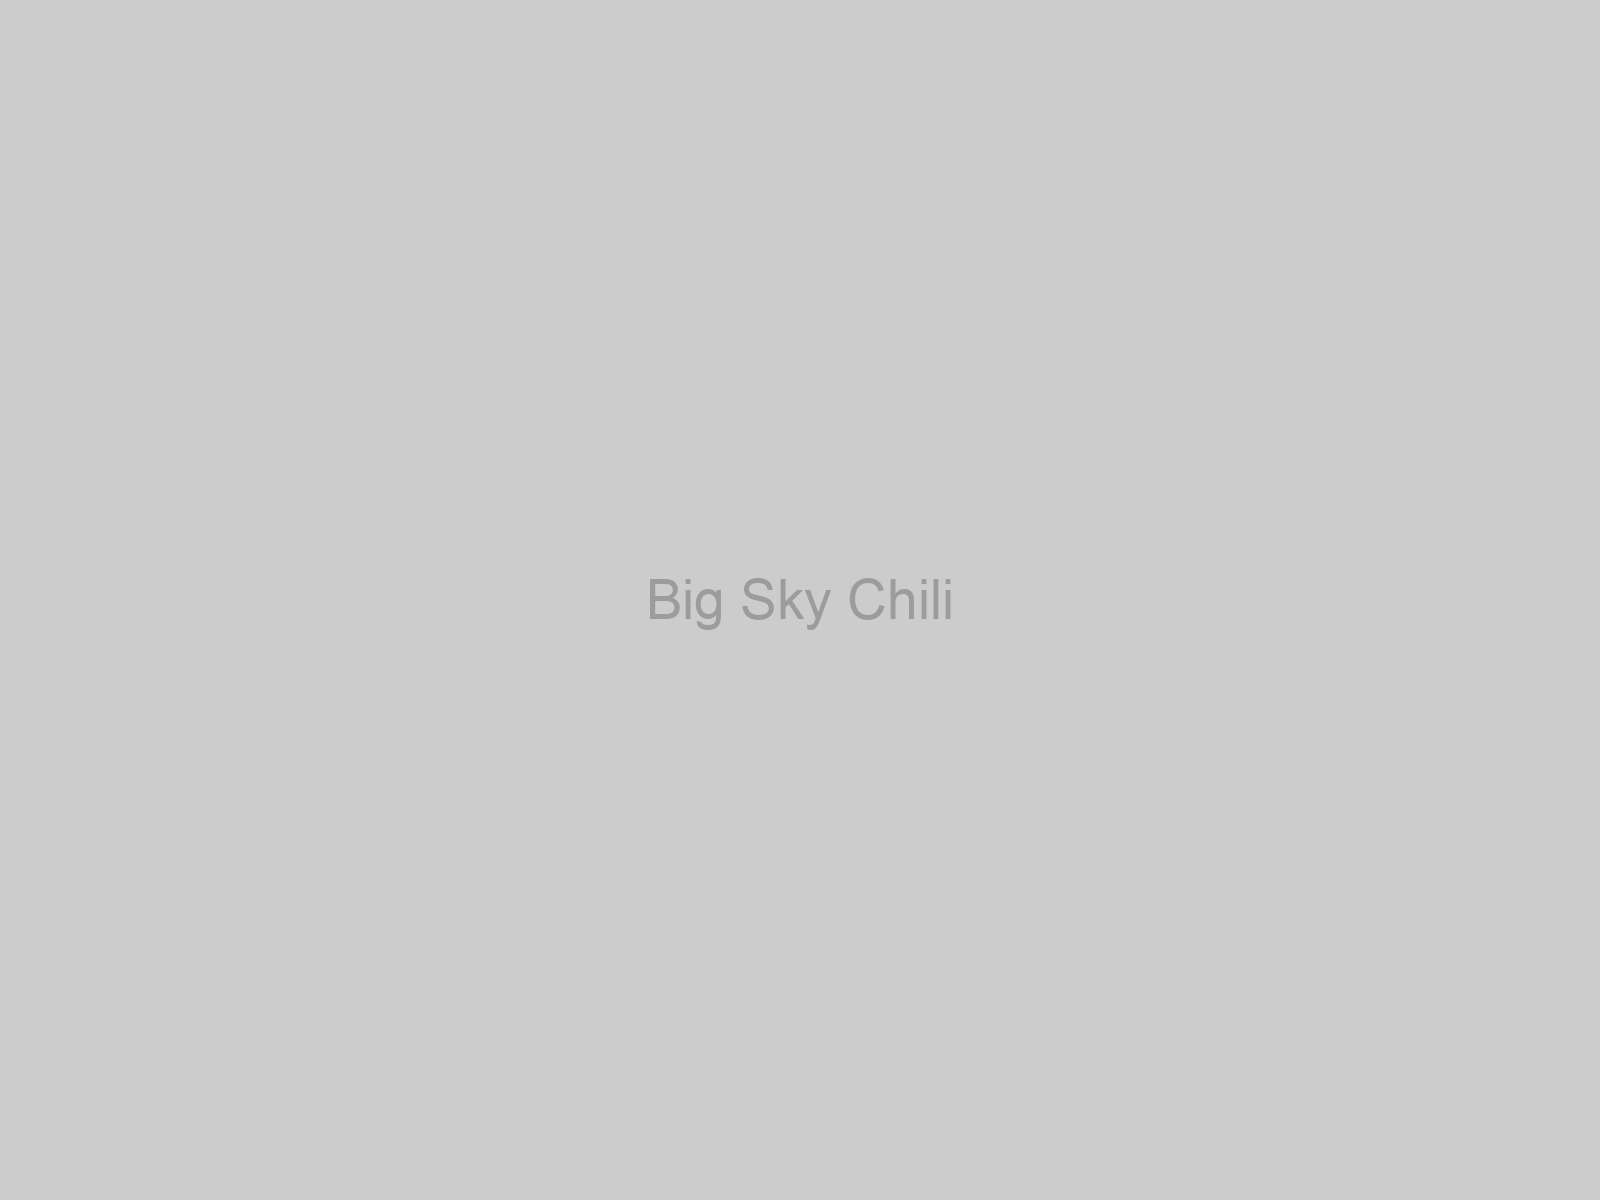 Big Sky Chili